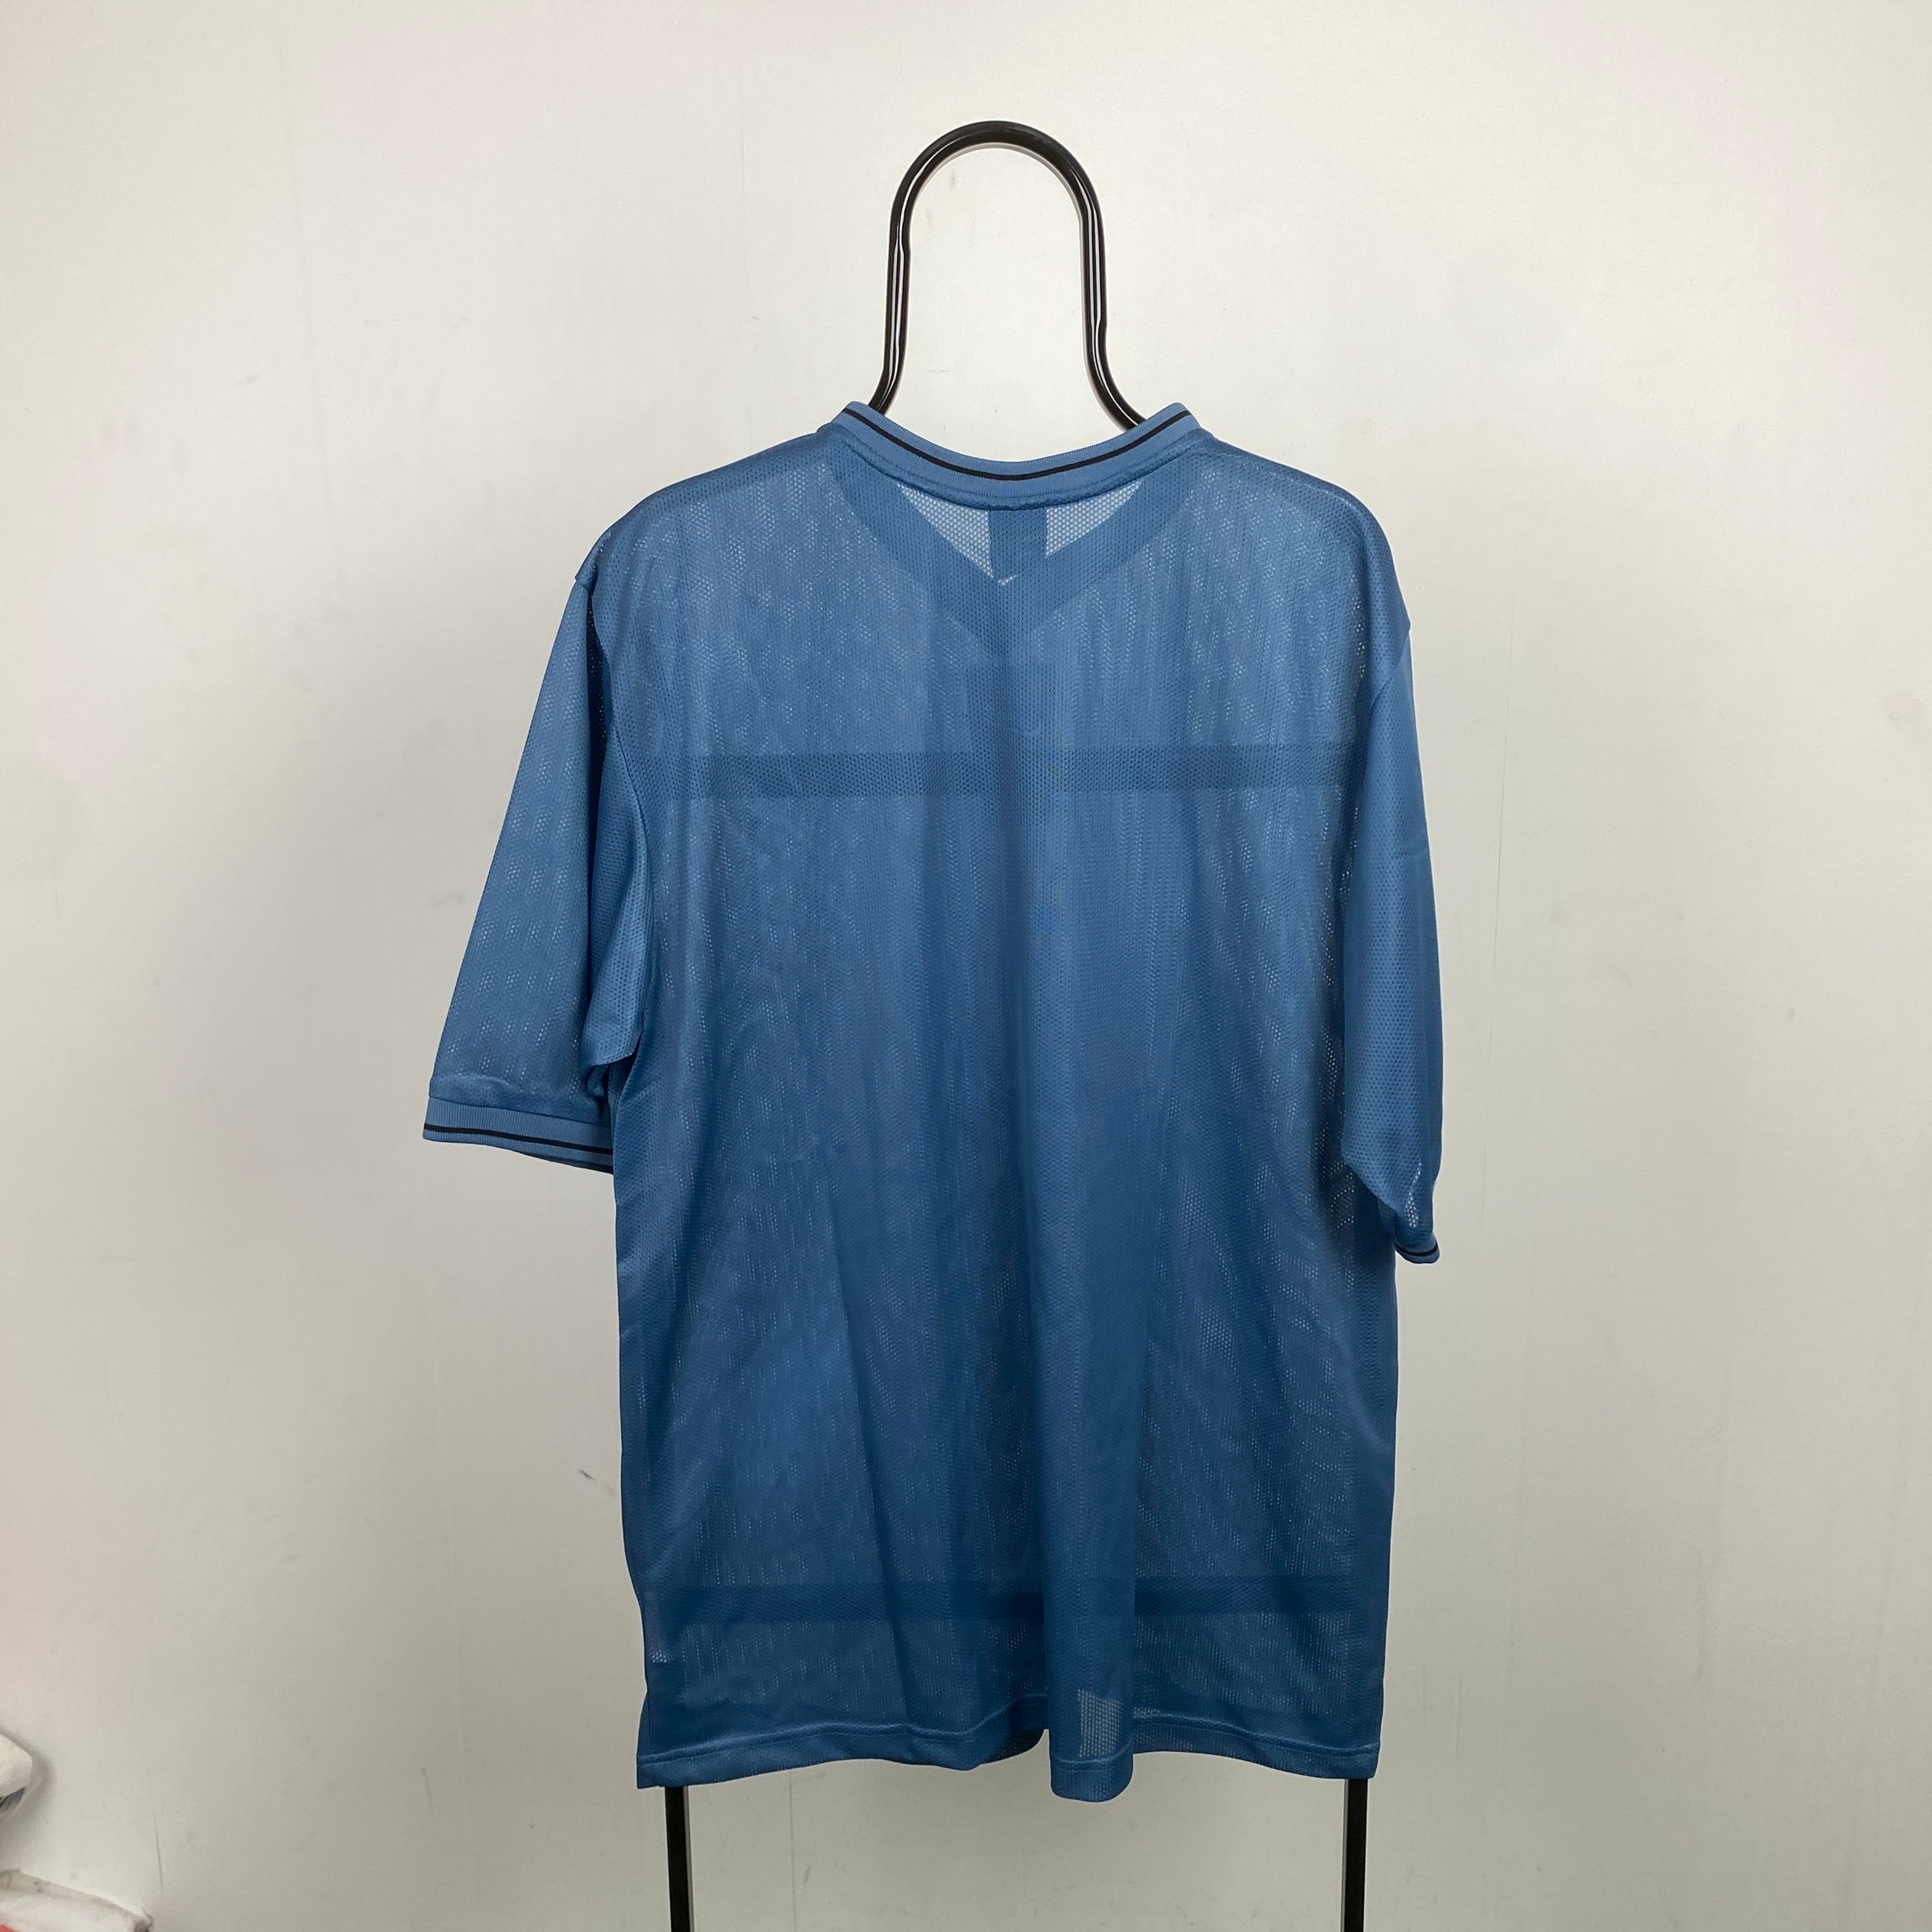 90s Nike Mesh T-Shirt Blue Medium